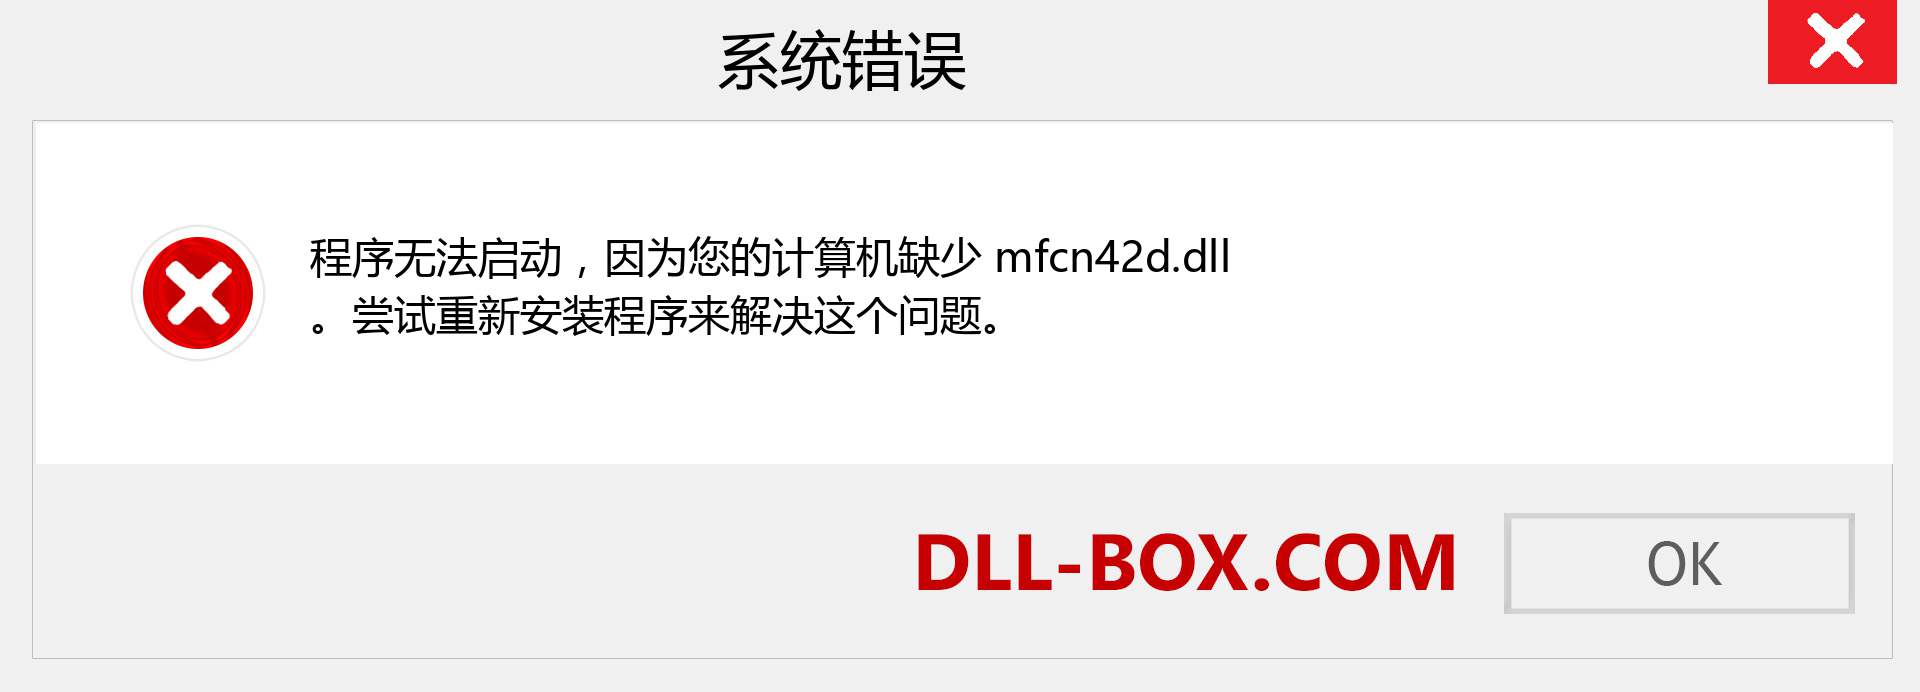 mfcn42d.dll 文件丢失？。 适用于 Windows 7、8、10 的下载 - 修复 Windows、照片、图像上的 mfcn42d dll 丢失错误